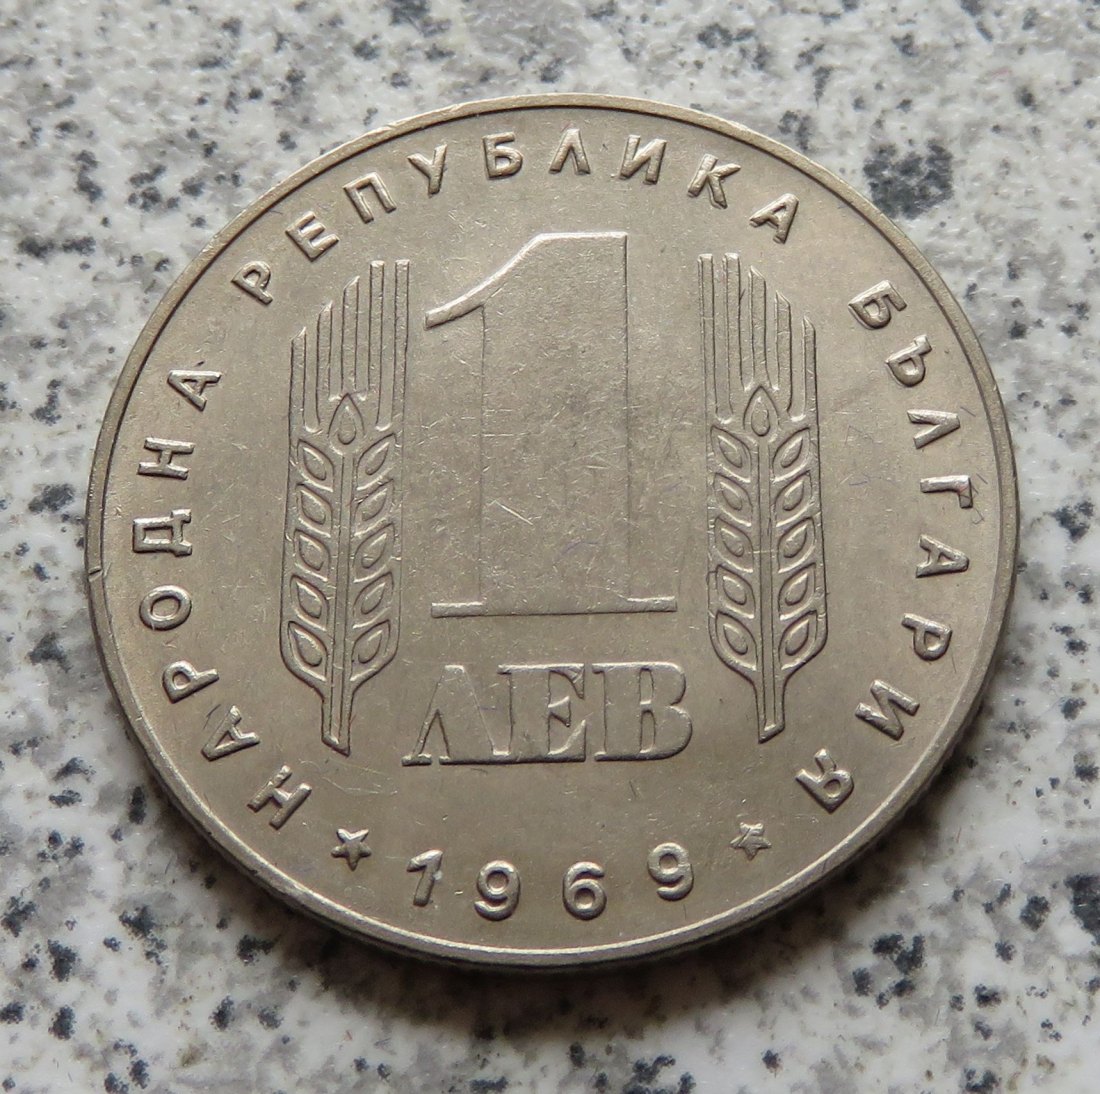  Bulgarien 1 Lew 1969   